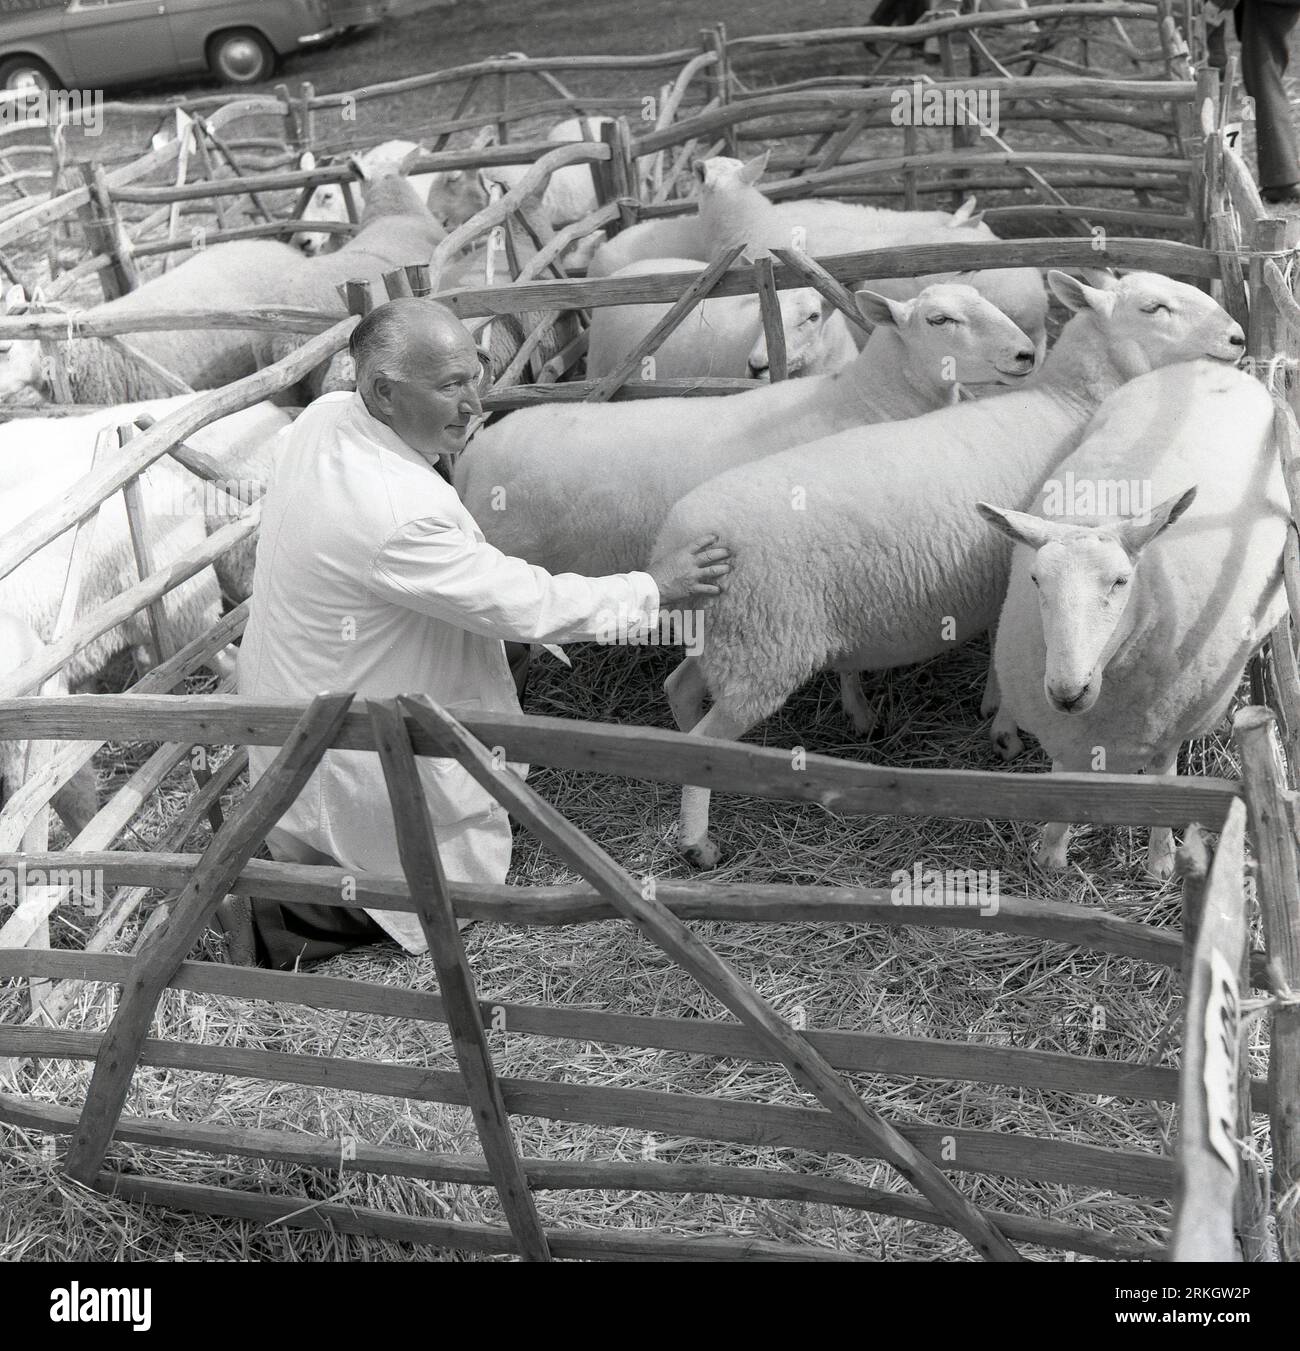 1964, historique, un directeur de ferme en manteau blanc vérifiant des moutons dans un enclos clôturé sur un marché de bétail, Angleterre, Royaume-Uni. Le bien-être des animaux est une considération clé lorsque les animaux sont réunis pour une vente ou un spectacle. Banque D'Images